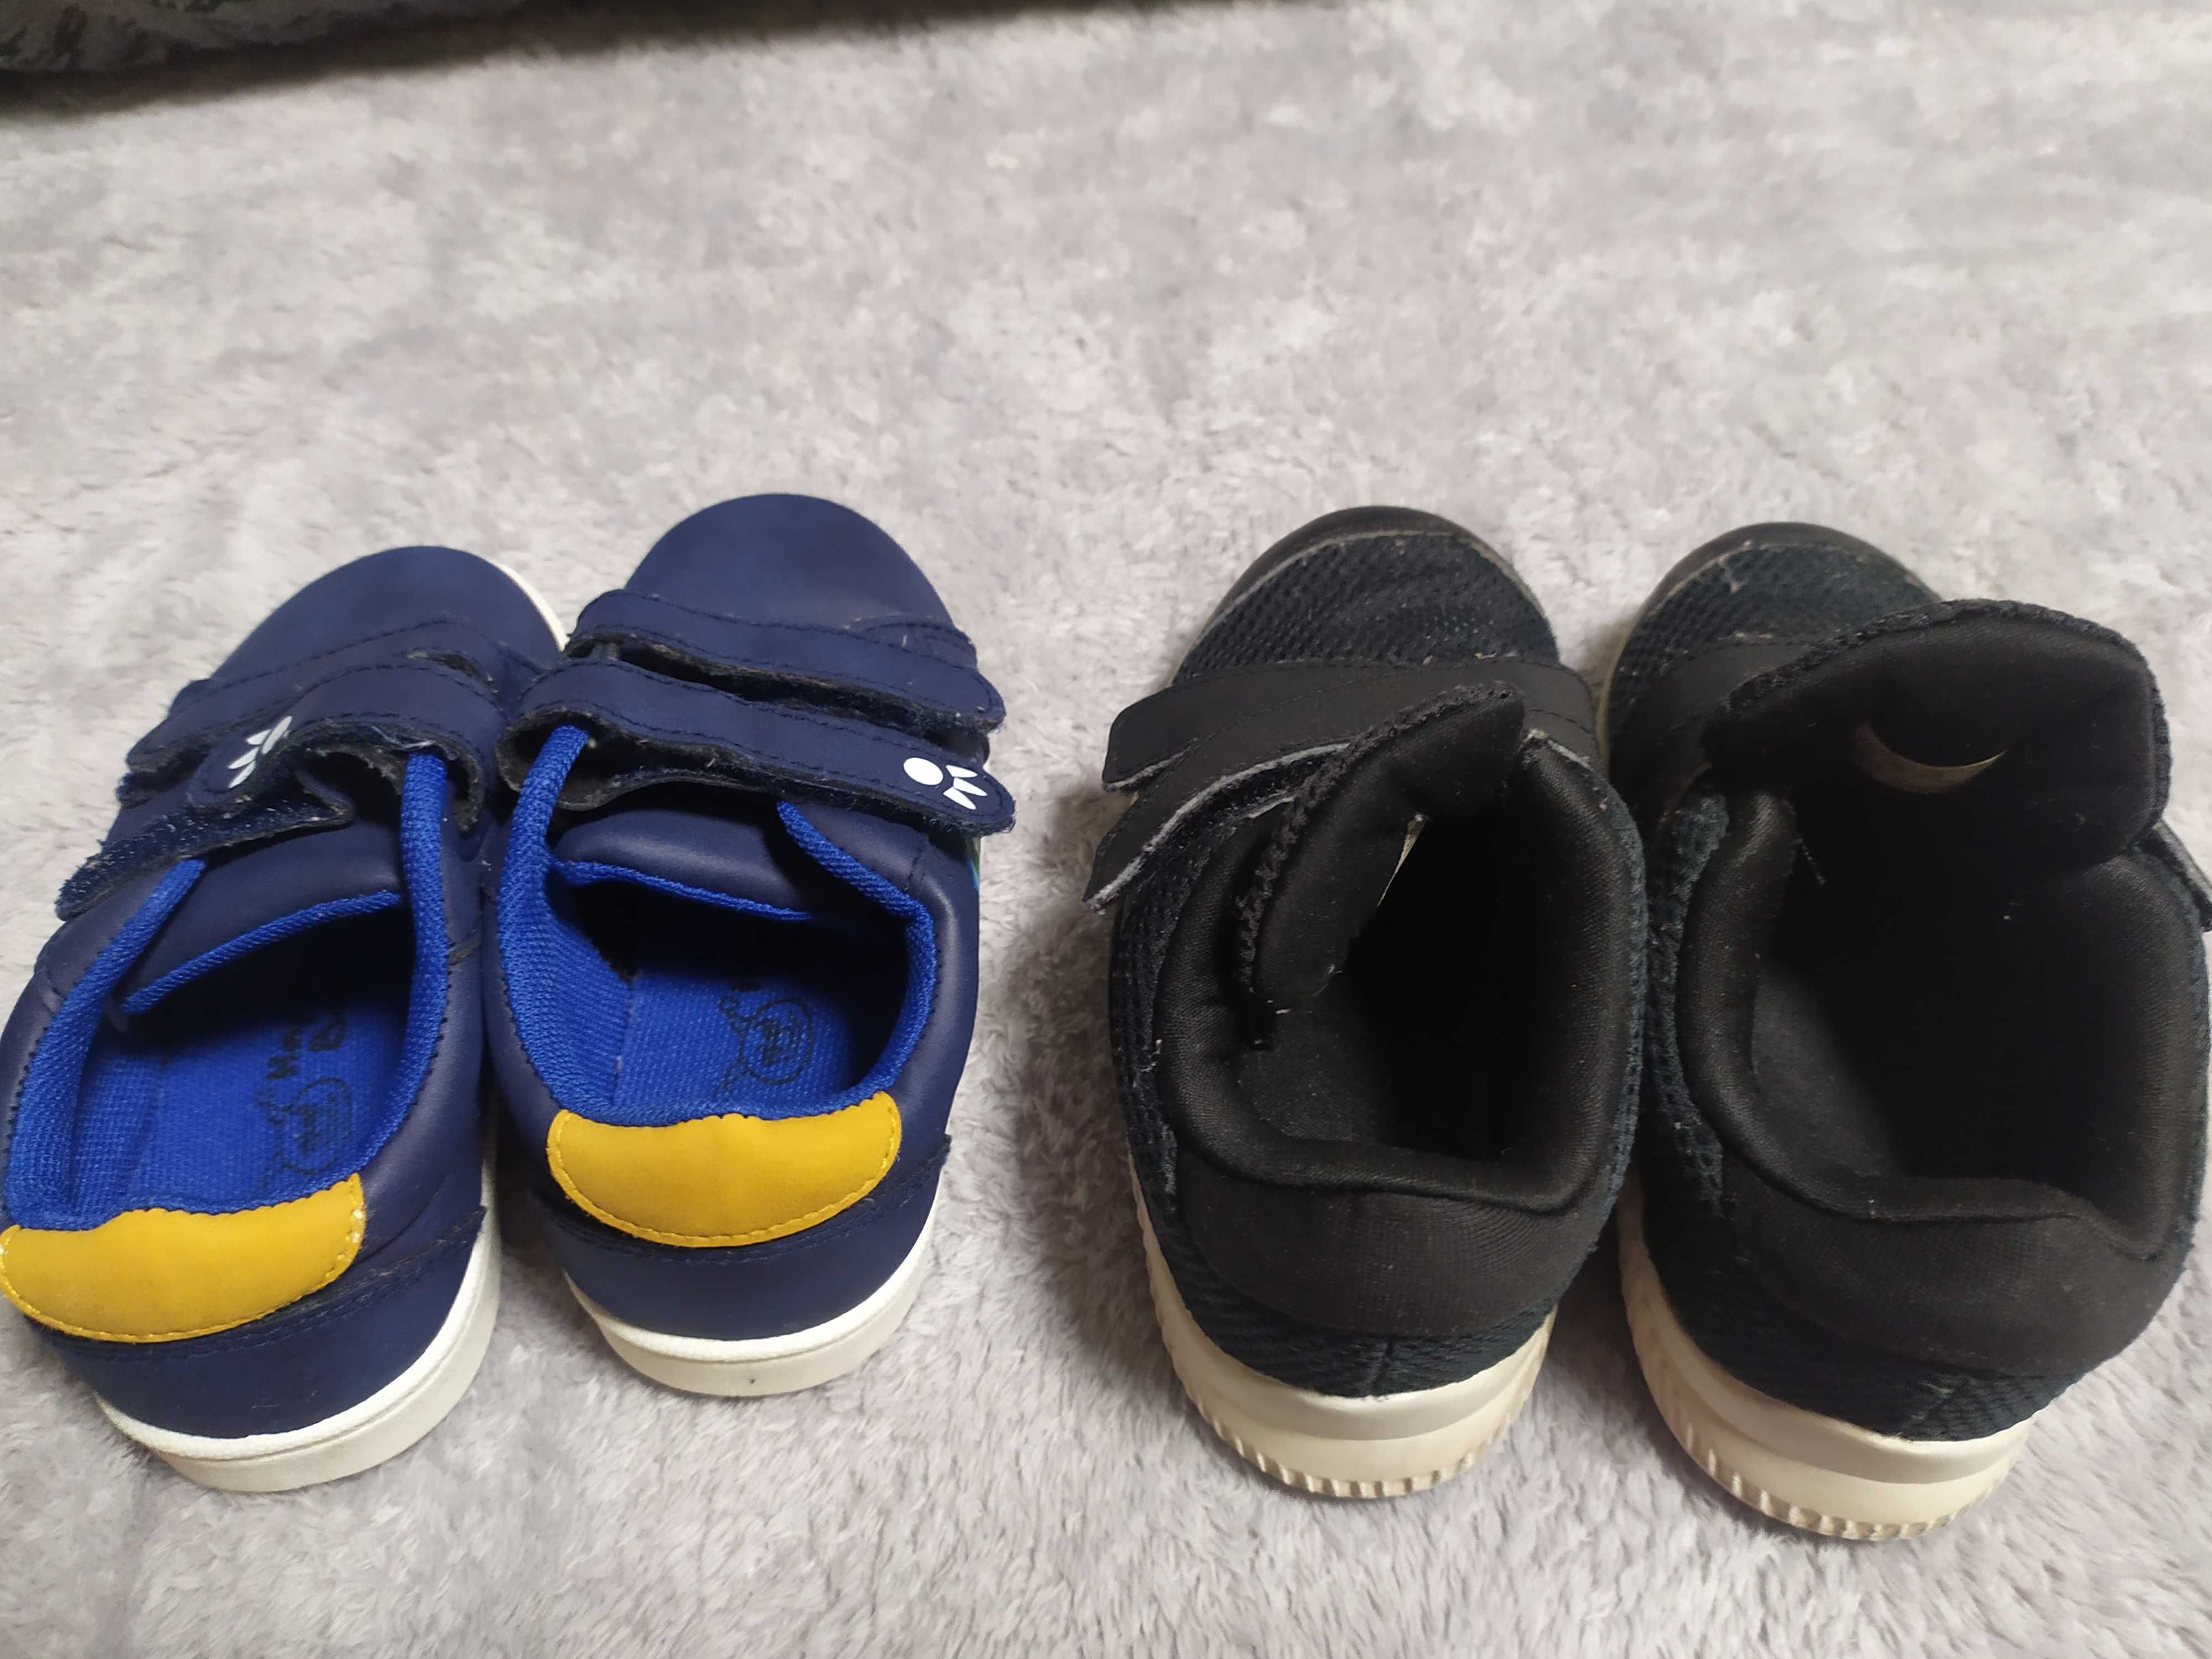 Кросівки Adidas, кеди, сандалі 24 і 25 р, кроссовки, босоножки 24, 25